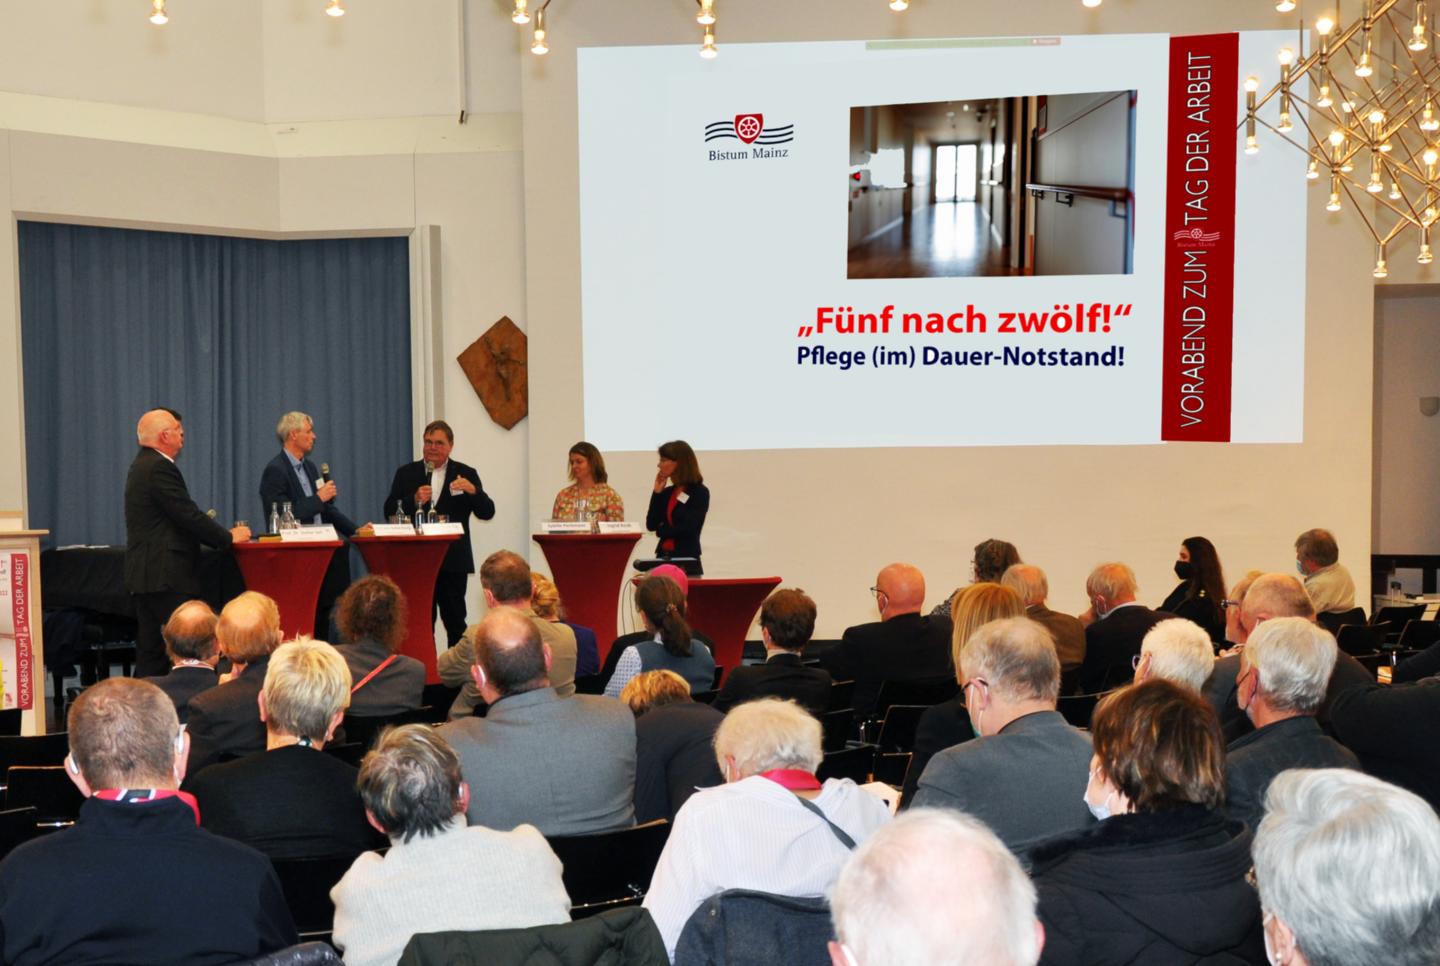 Mainz, 30.4.2022: Auch beim Podiumsgespräch wurden Fragen rund um das Thema Pflege diskutiert. (c) bss/Andreas Gallhuber